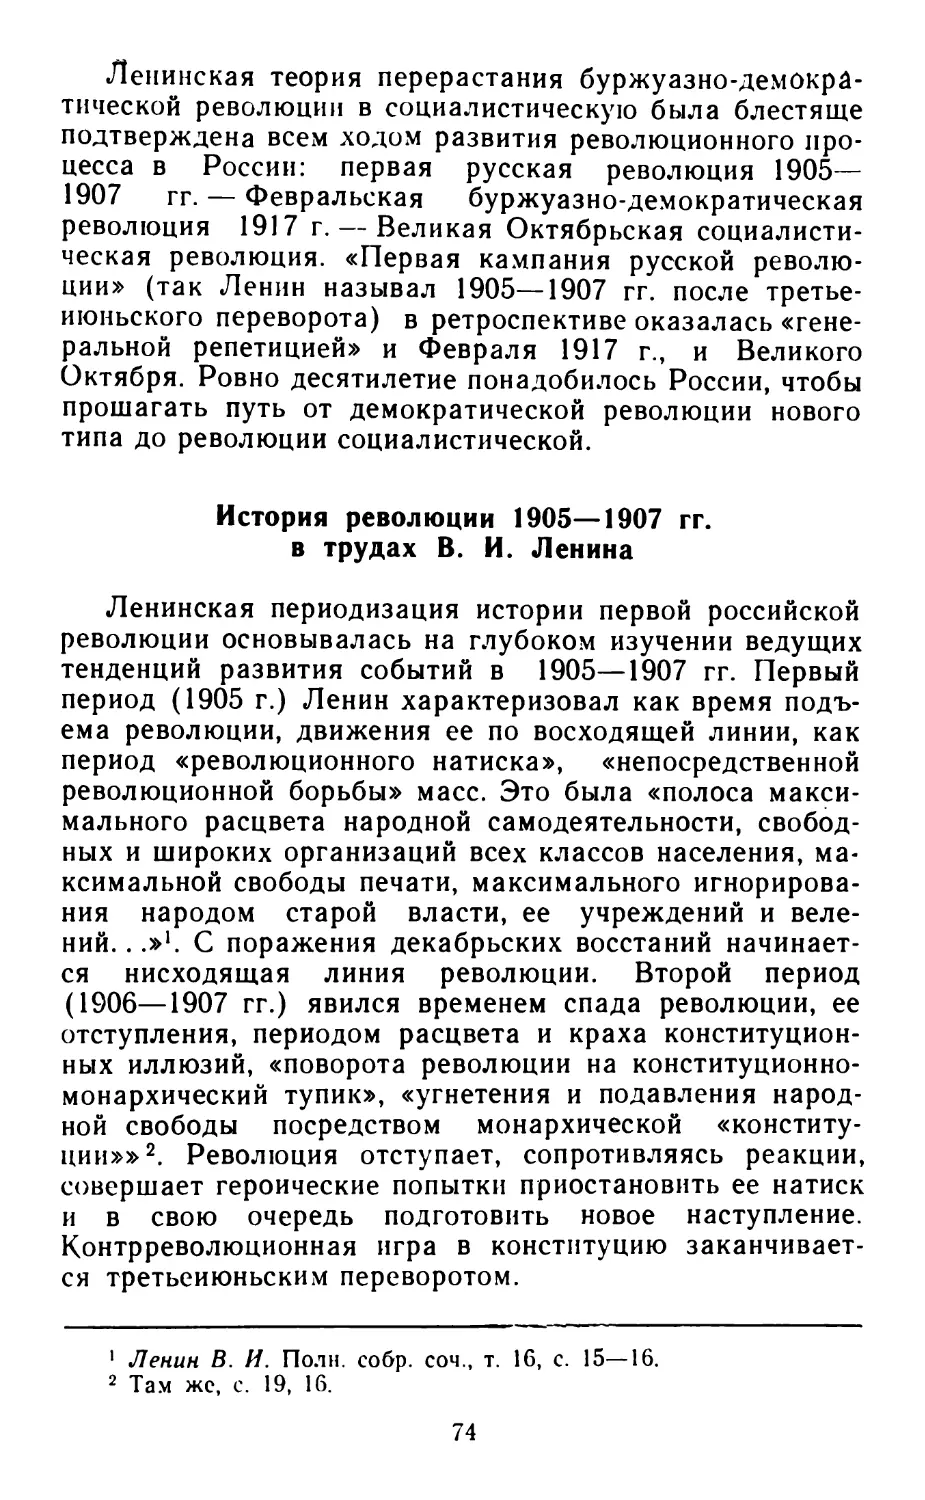 История революции 1905—1907 гг. в трудах В. И. Ленина